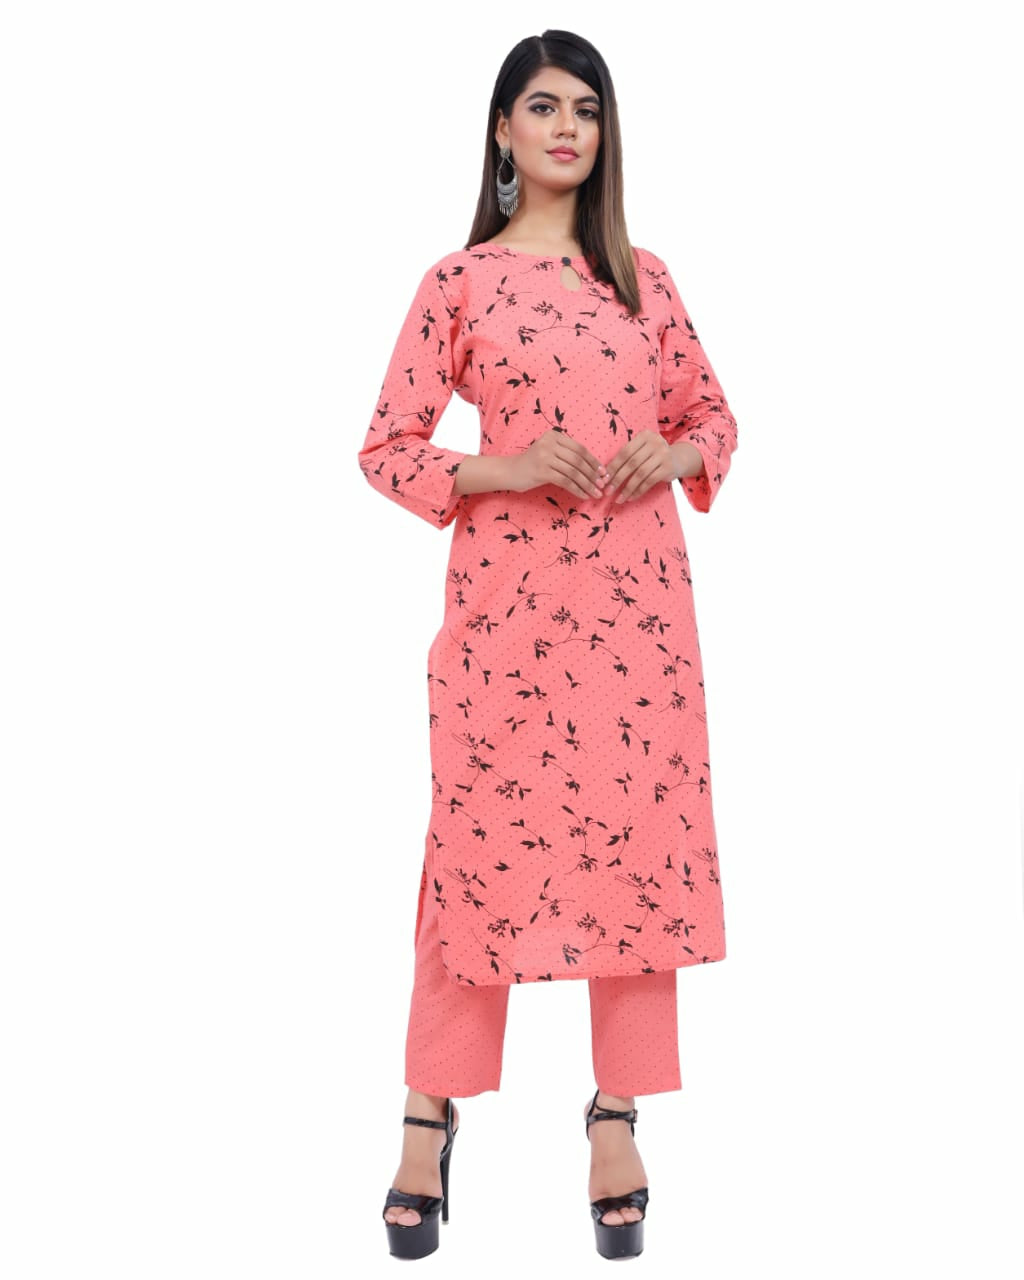 Kurtis With Palazzo Pants - 27 Ways to Wear Palazzo & Kurtis | Beautiful  dresses for women, Beautiful pakistani dresses, Fancy dress design